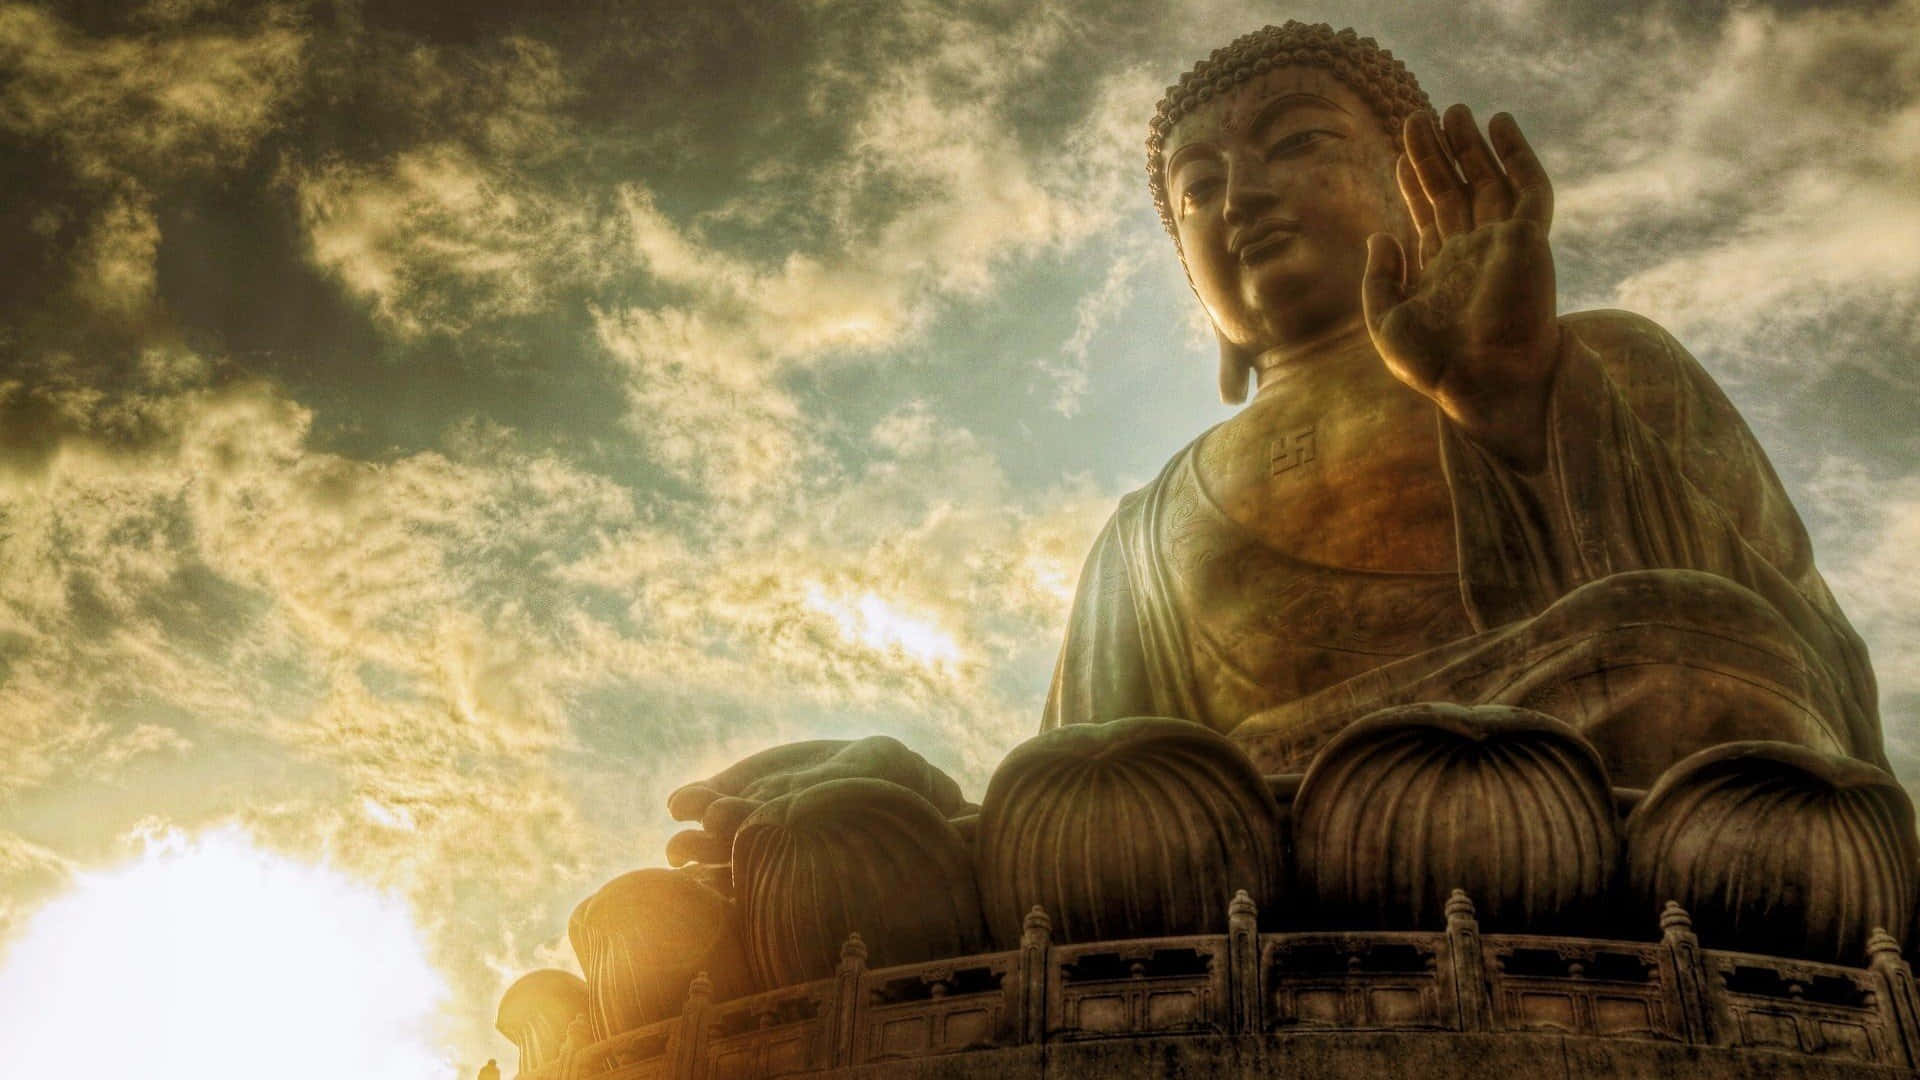 Buddhaführt Ein Leben Der Gelassenheit Und Des Friedens.